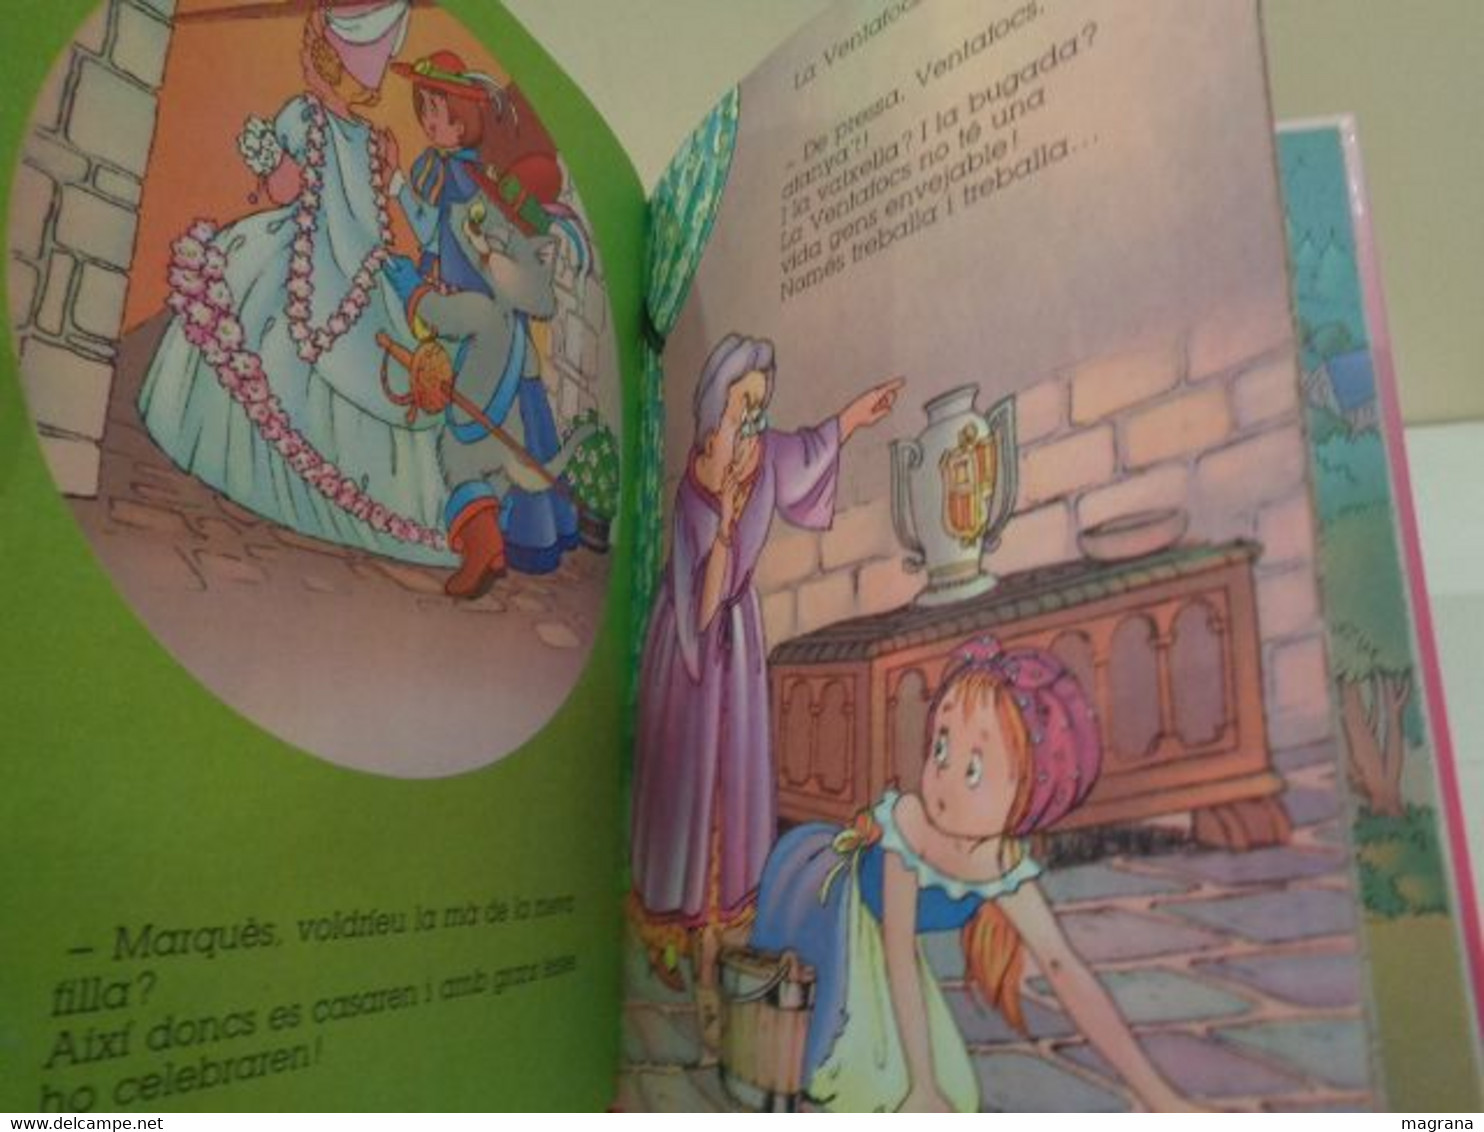 En el País dels somnis. Adaptació de Eva Cardona. Il·lustracions de Carlos Busquets. Edicions Hemma. Llibre de contes